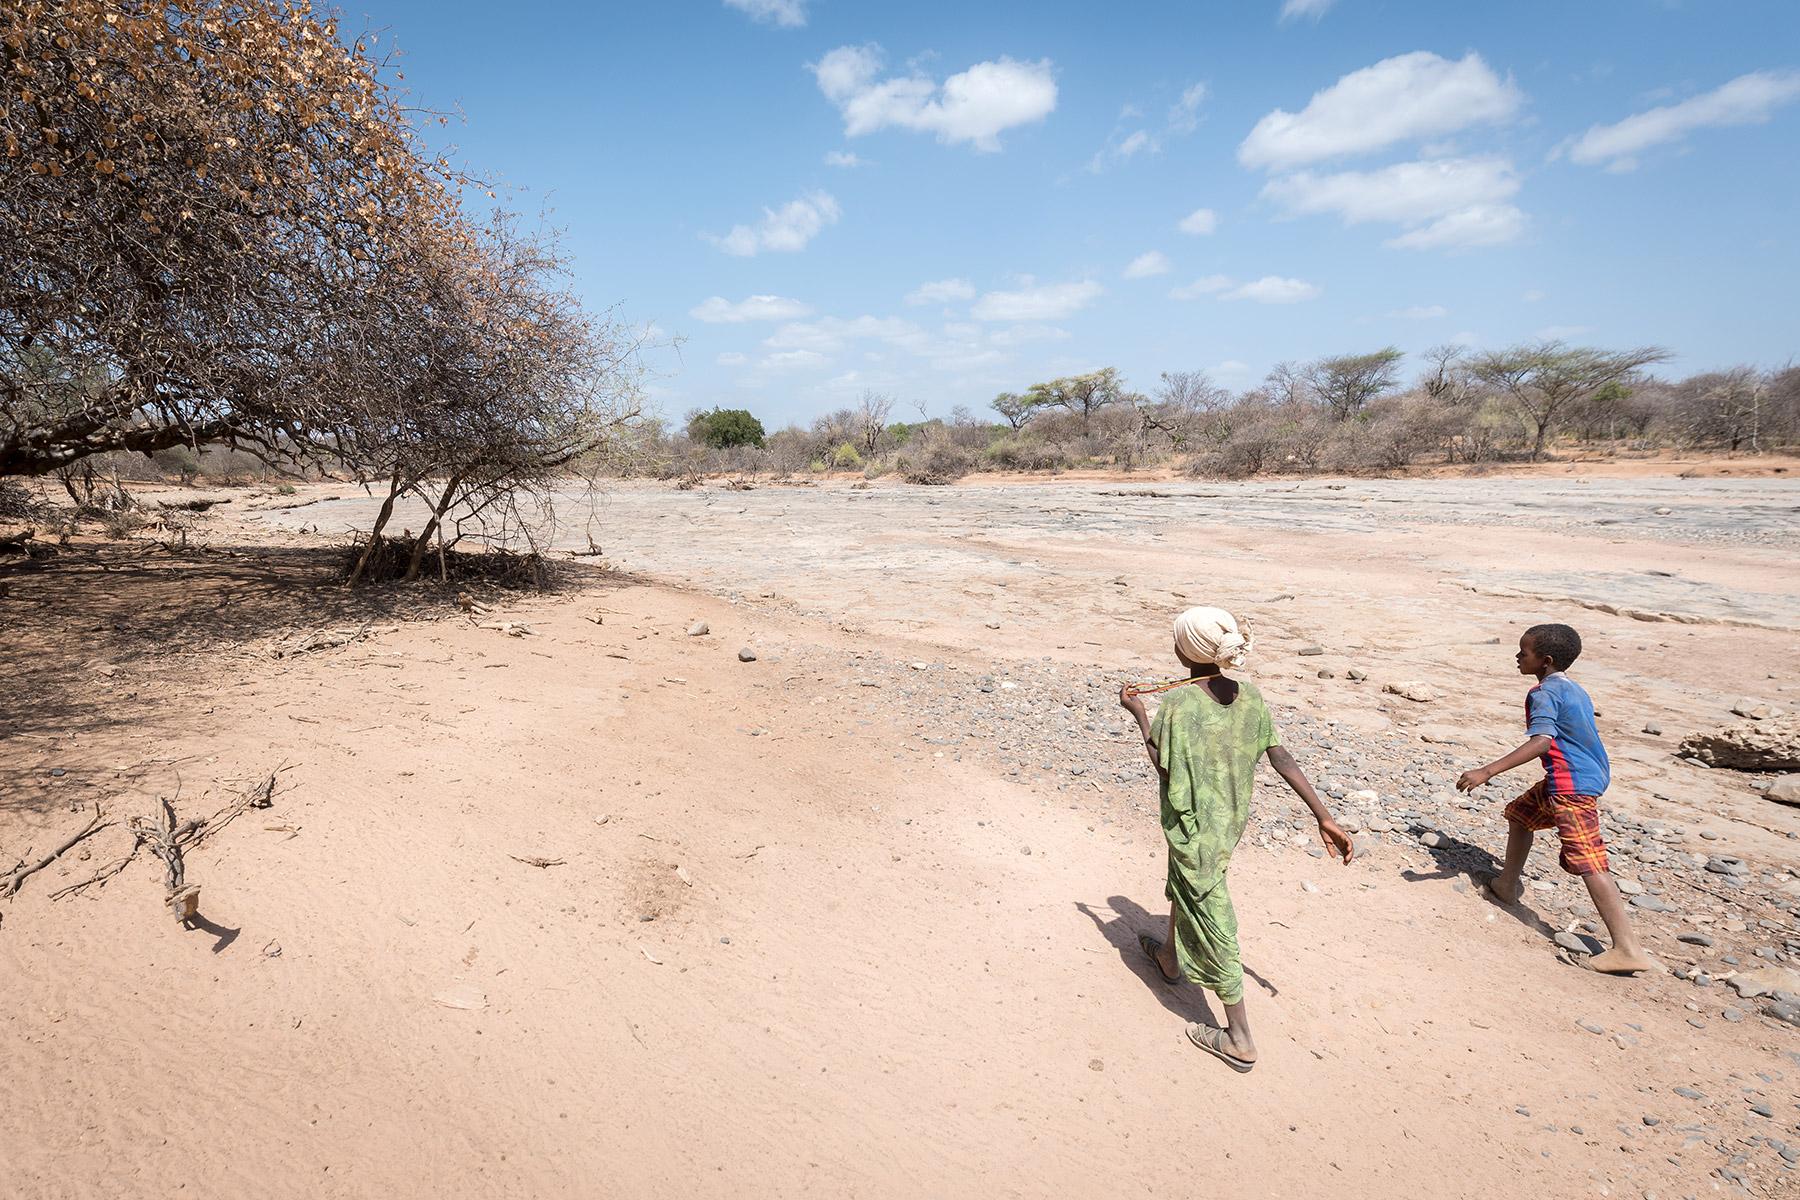 Der Lutherische Weltbund unterstützt Binnenvertriebene in mehreren Regionen Äthiopiens durch Nothilfe in den Bereichen Wasser, Sanitärversorgung und Hygiene sowie durch langfristige Entwicklungs- und Förderprojekte, um die Resilienz der Gemeinden zu stärken und ihre Lebensweise an das sich verändernde Klima anzupassen. Foto: LWB/Albin Hillert